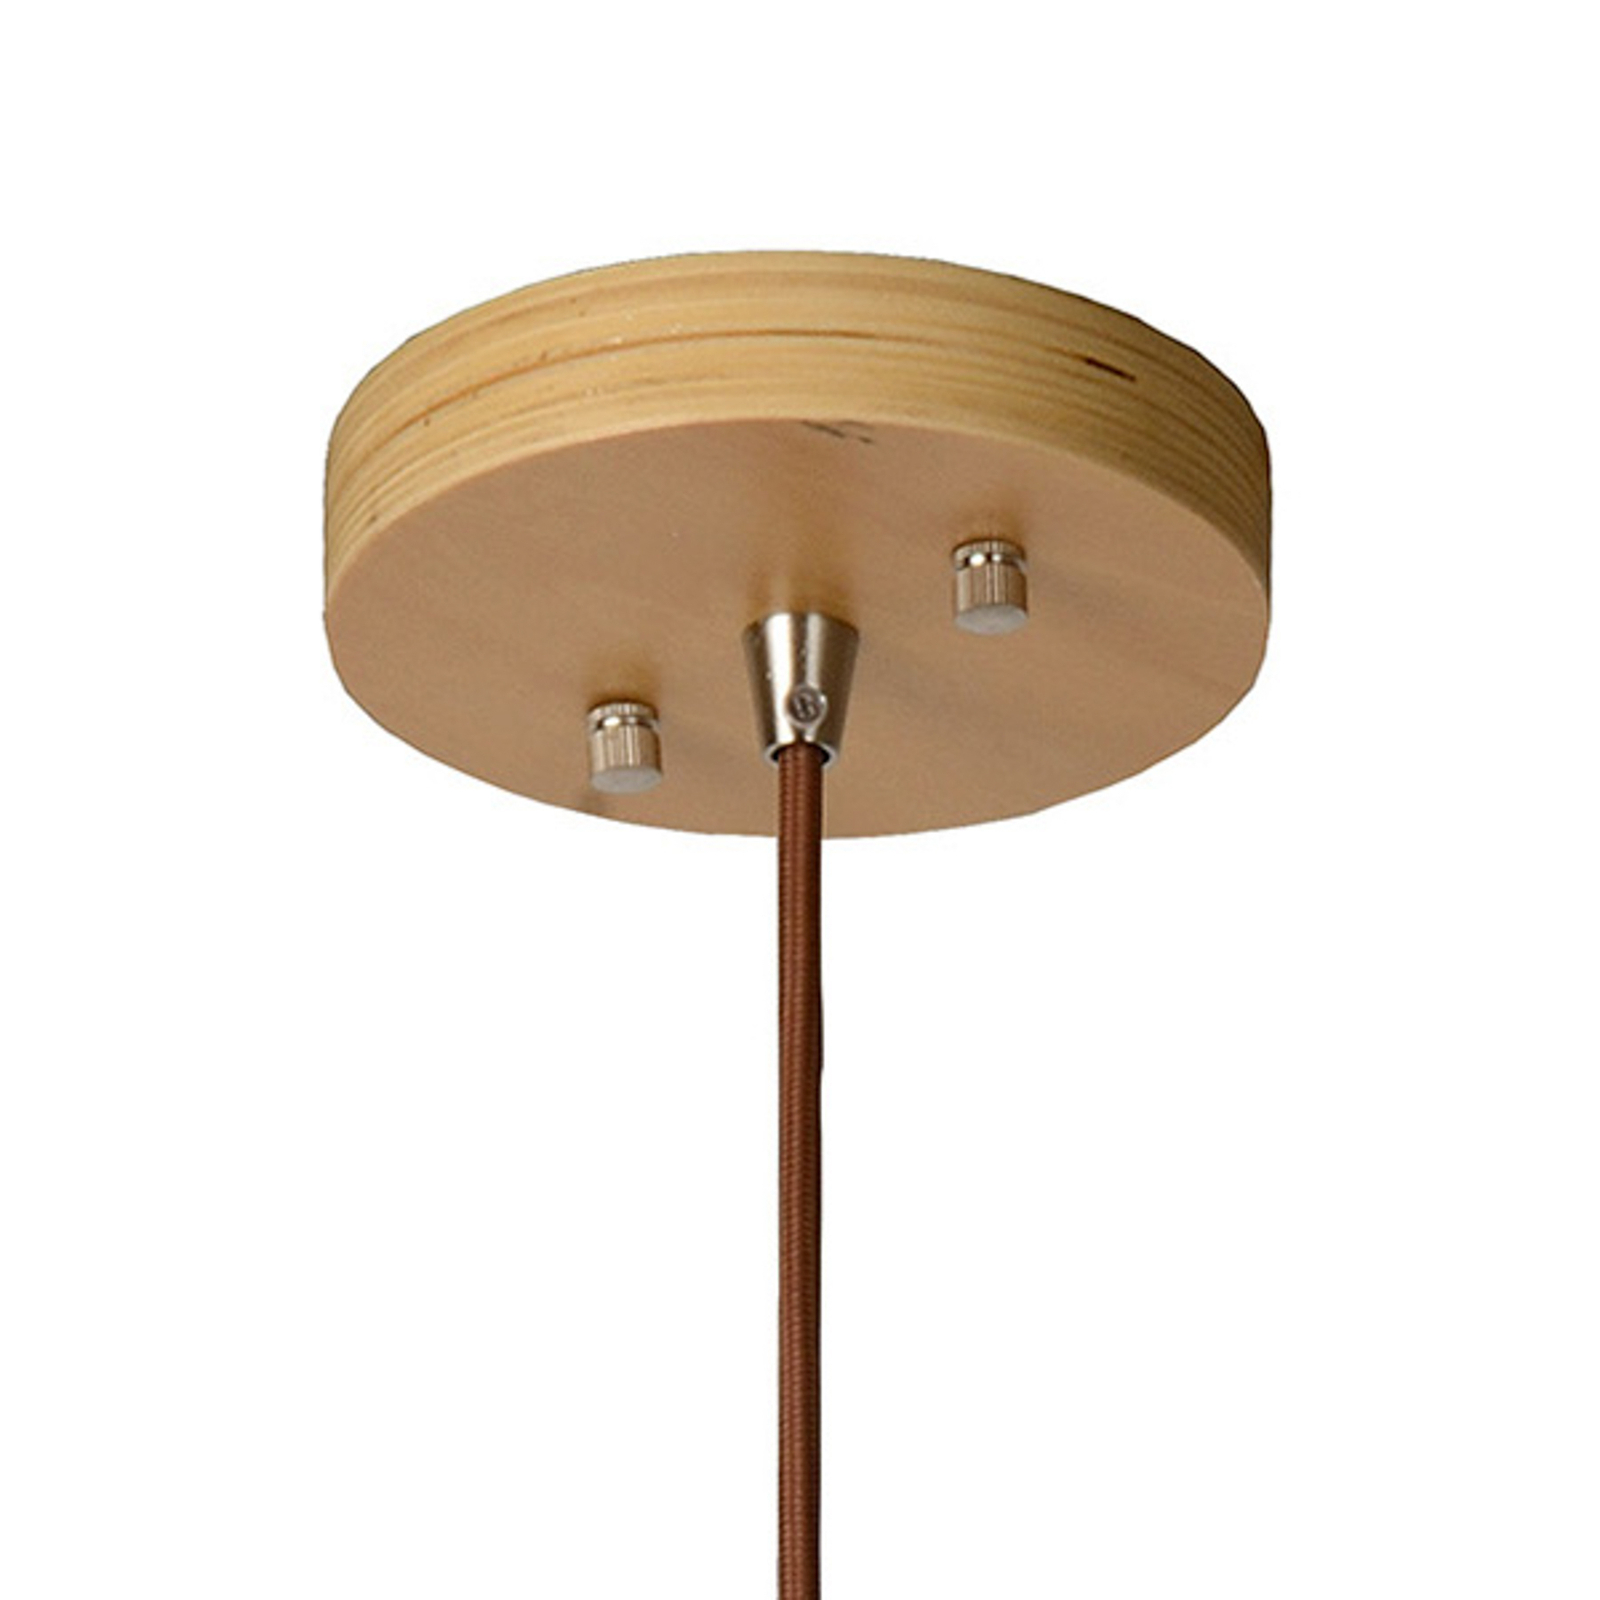 Bodo pendant light, light-coloured wood